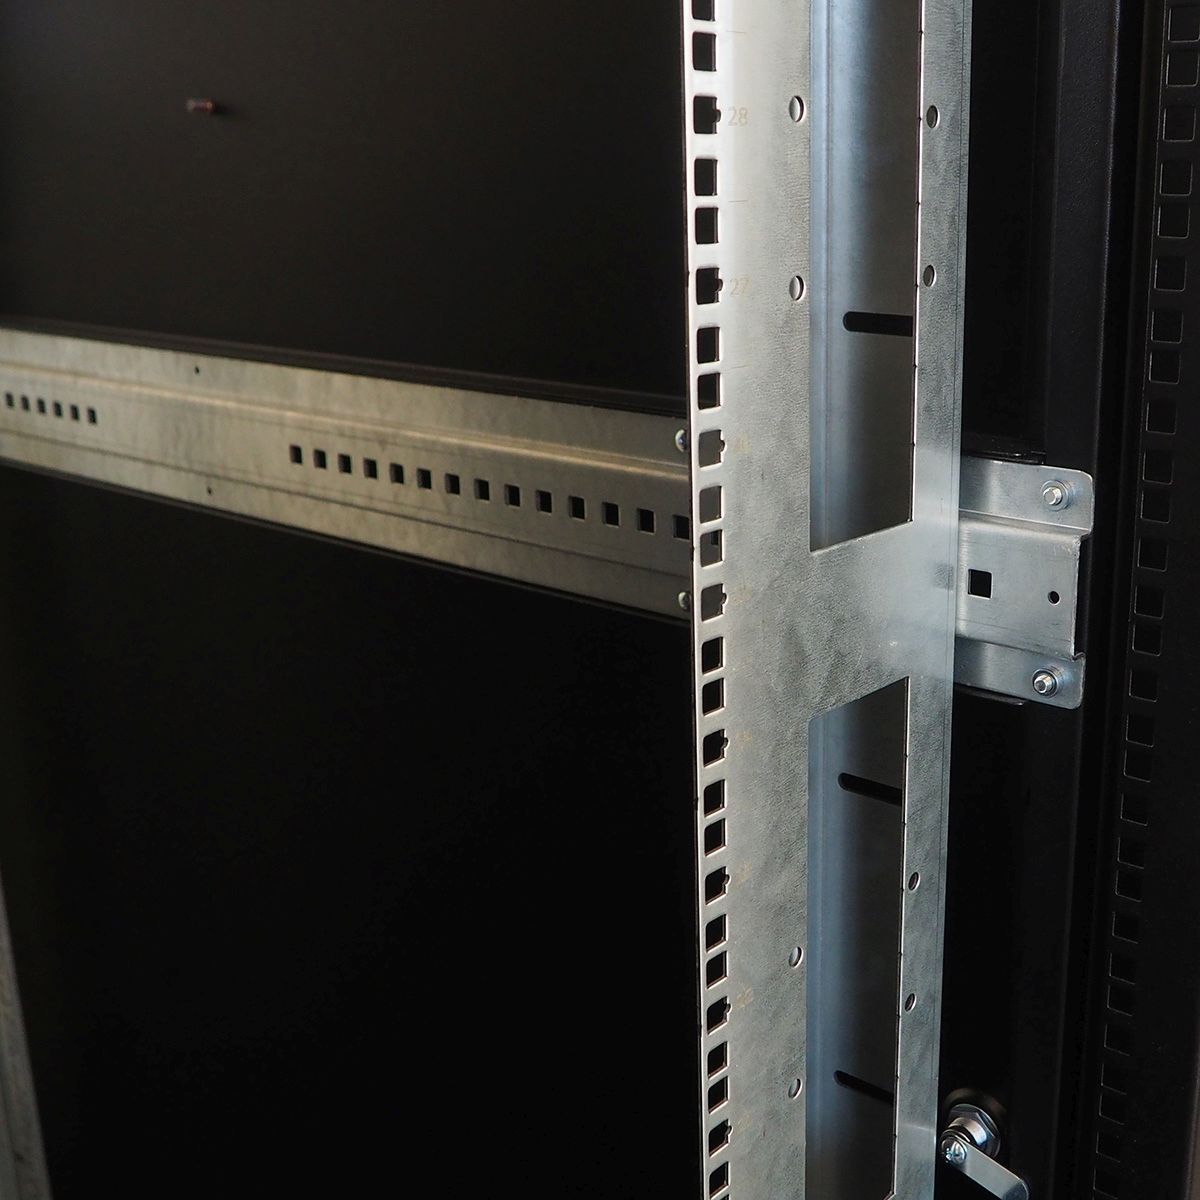 Шкаф серверный напольный 42U (800 × 1200) двойные перфорированные двери 2 шт., цвет черный